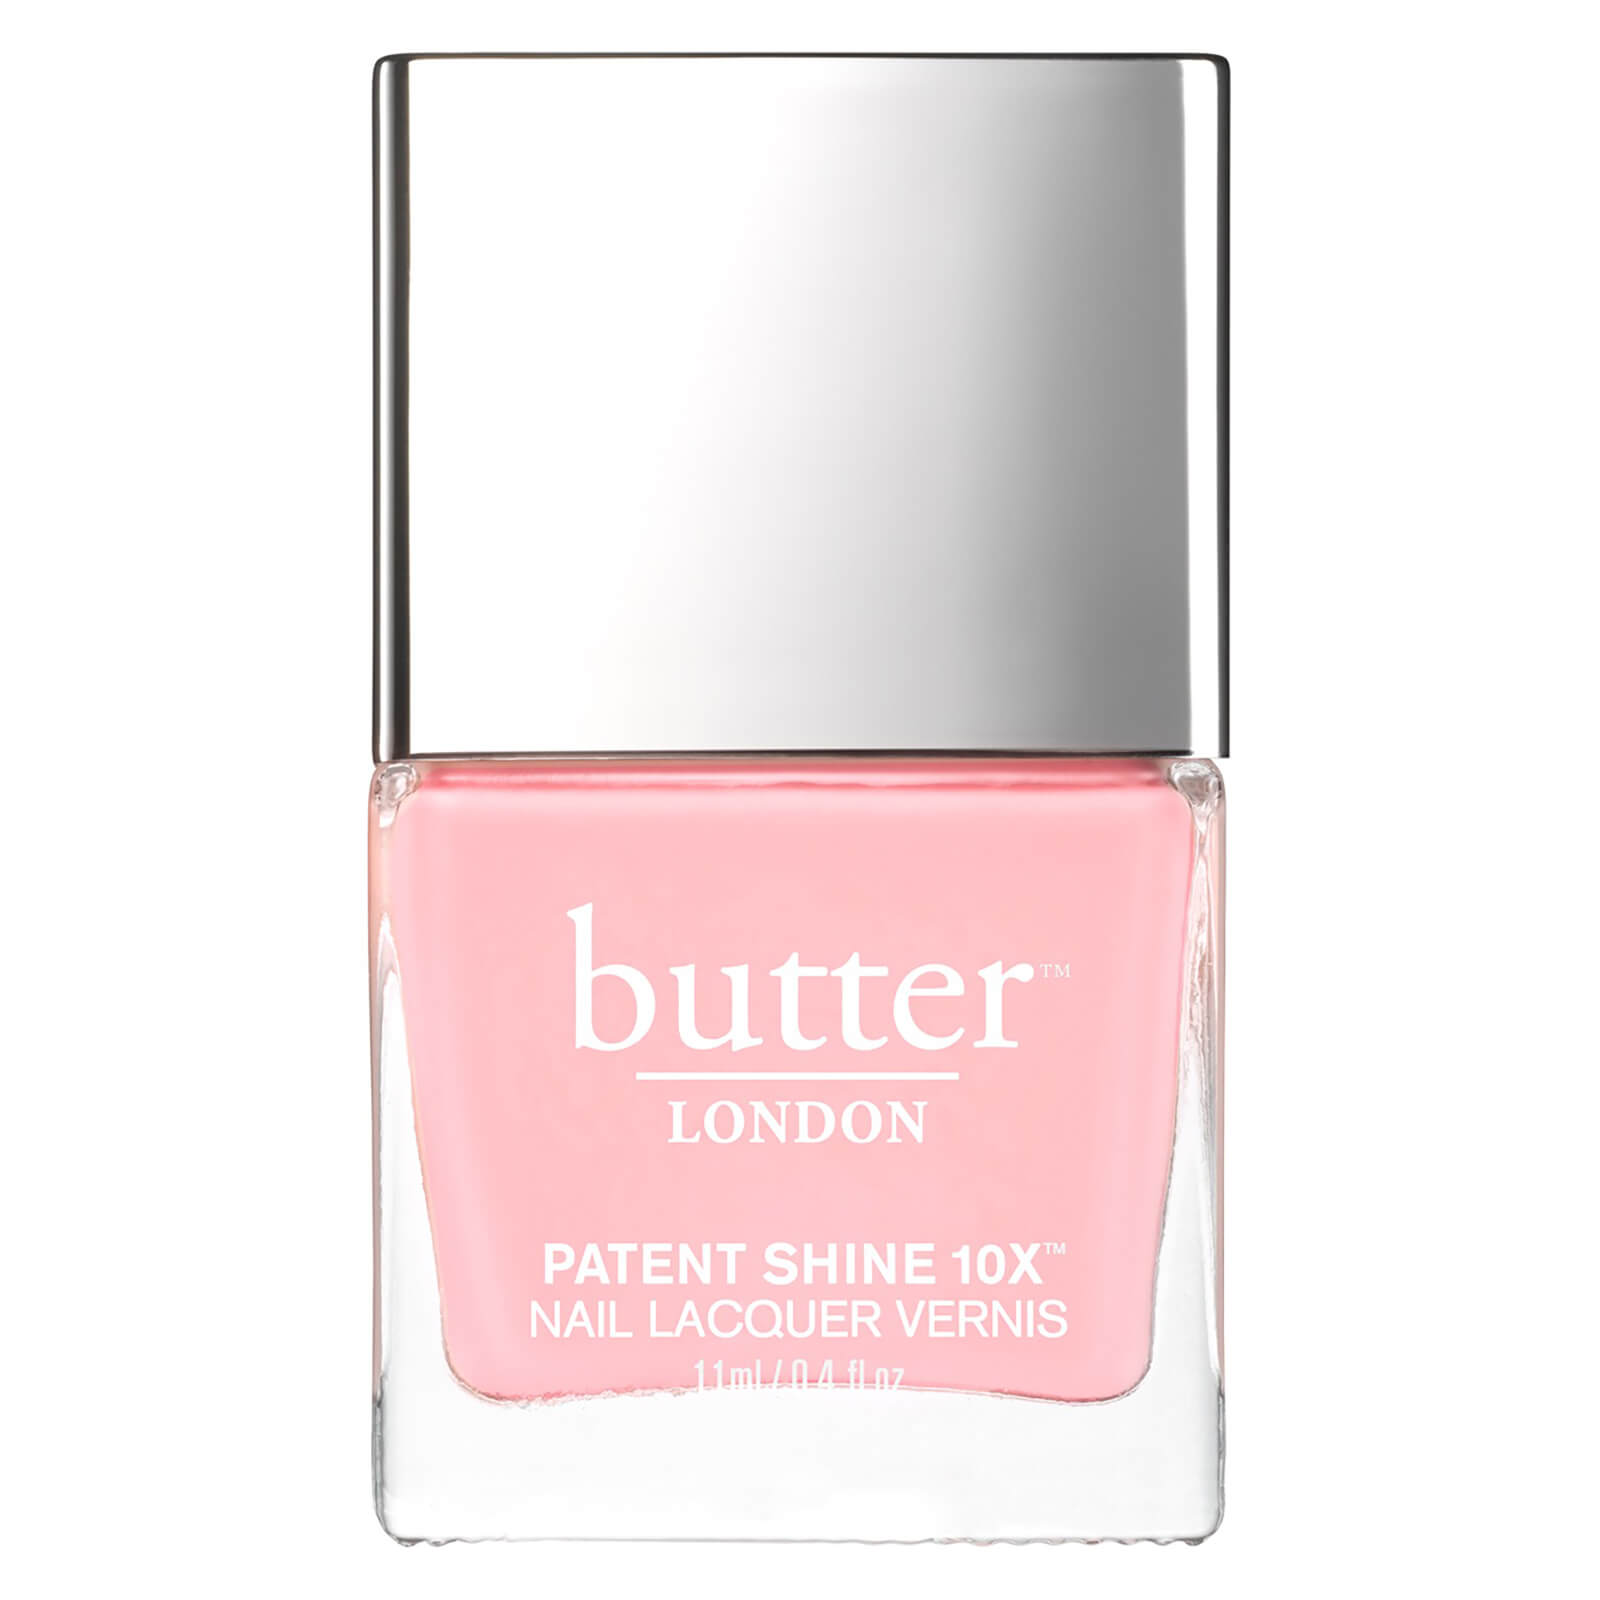 Esmalte de uñas Patent Shine 10X de butter LONDON 11 ml - Pink Knickers